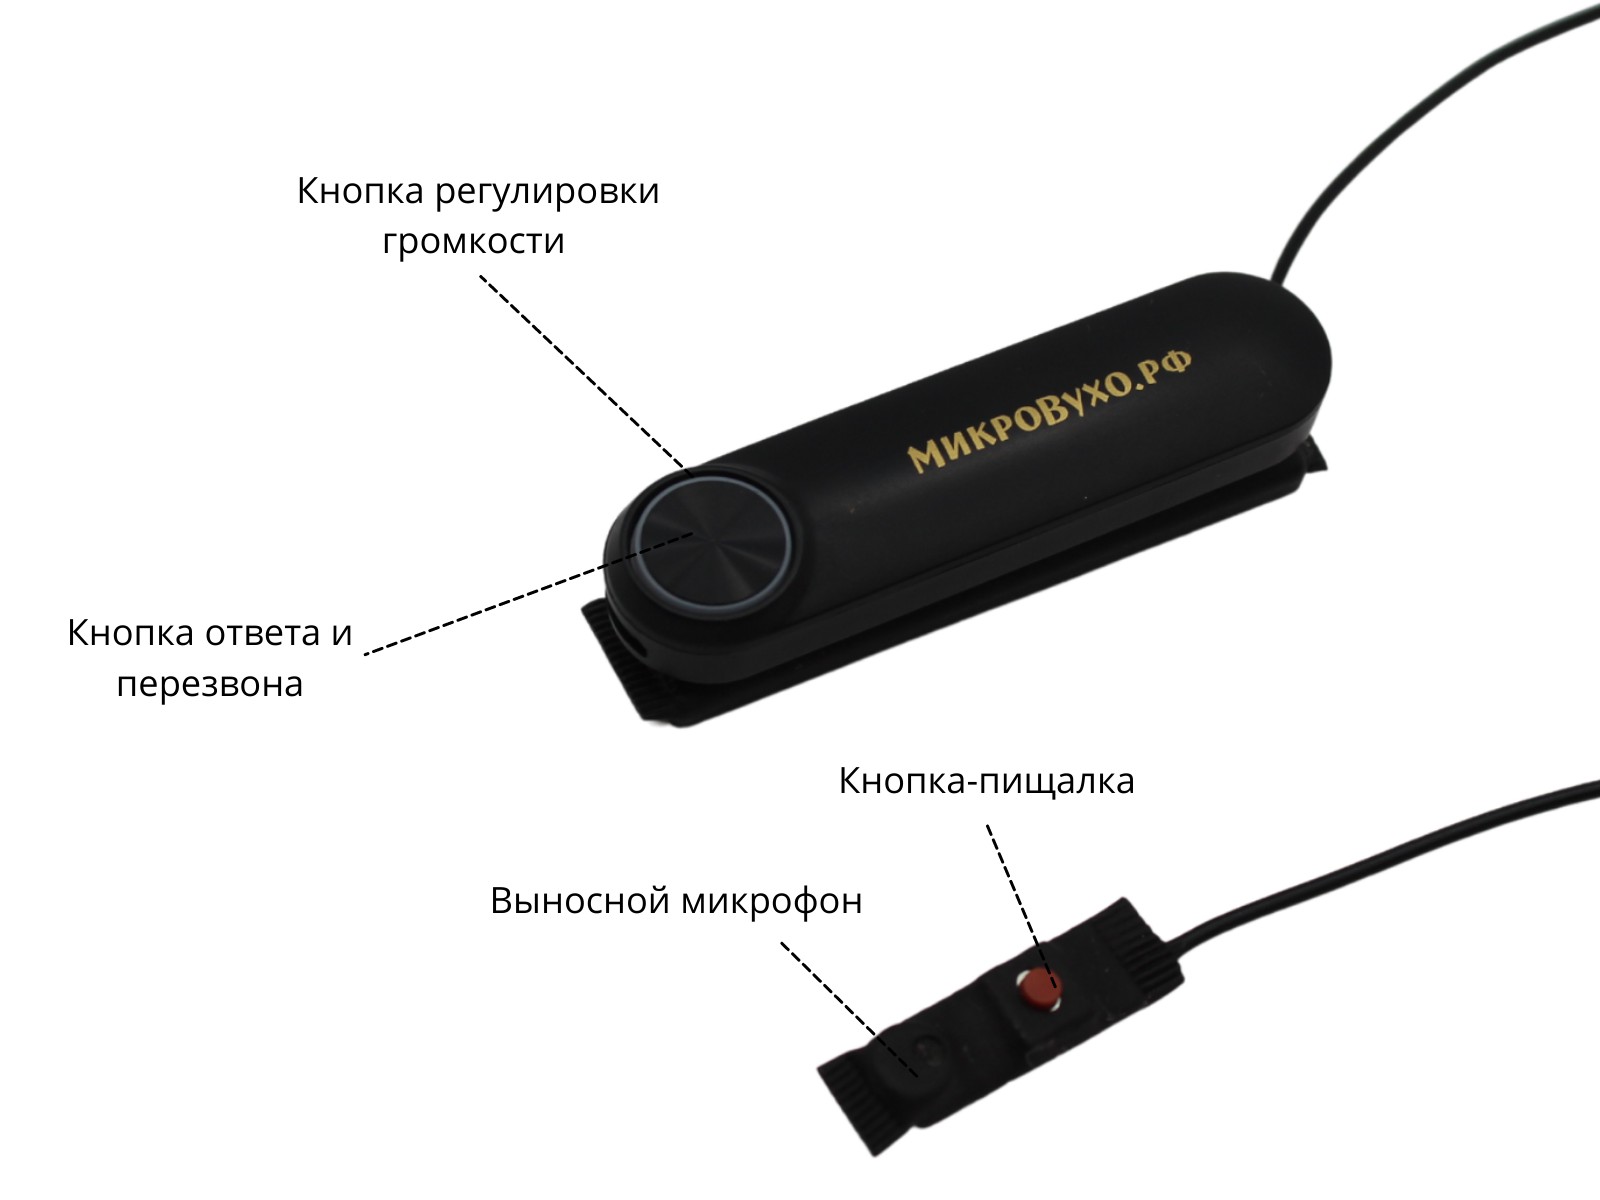 Универсальная гарнитура Bluetooth Box Standard Plus c капсулой Nano 4 мм и магнитами 2 мм - изображение 7